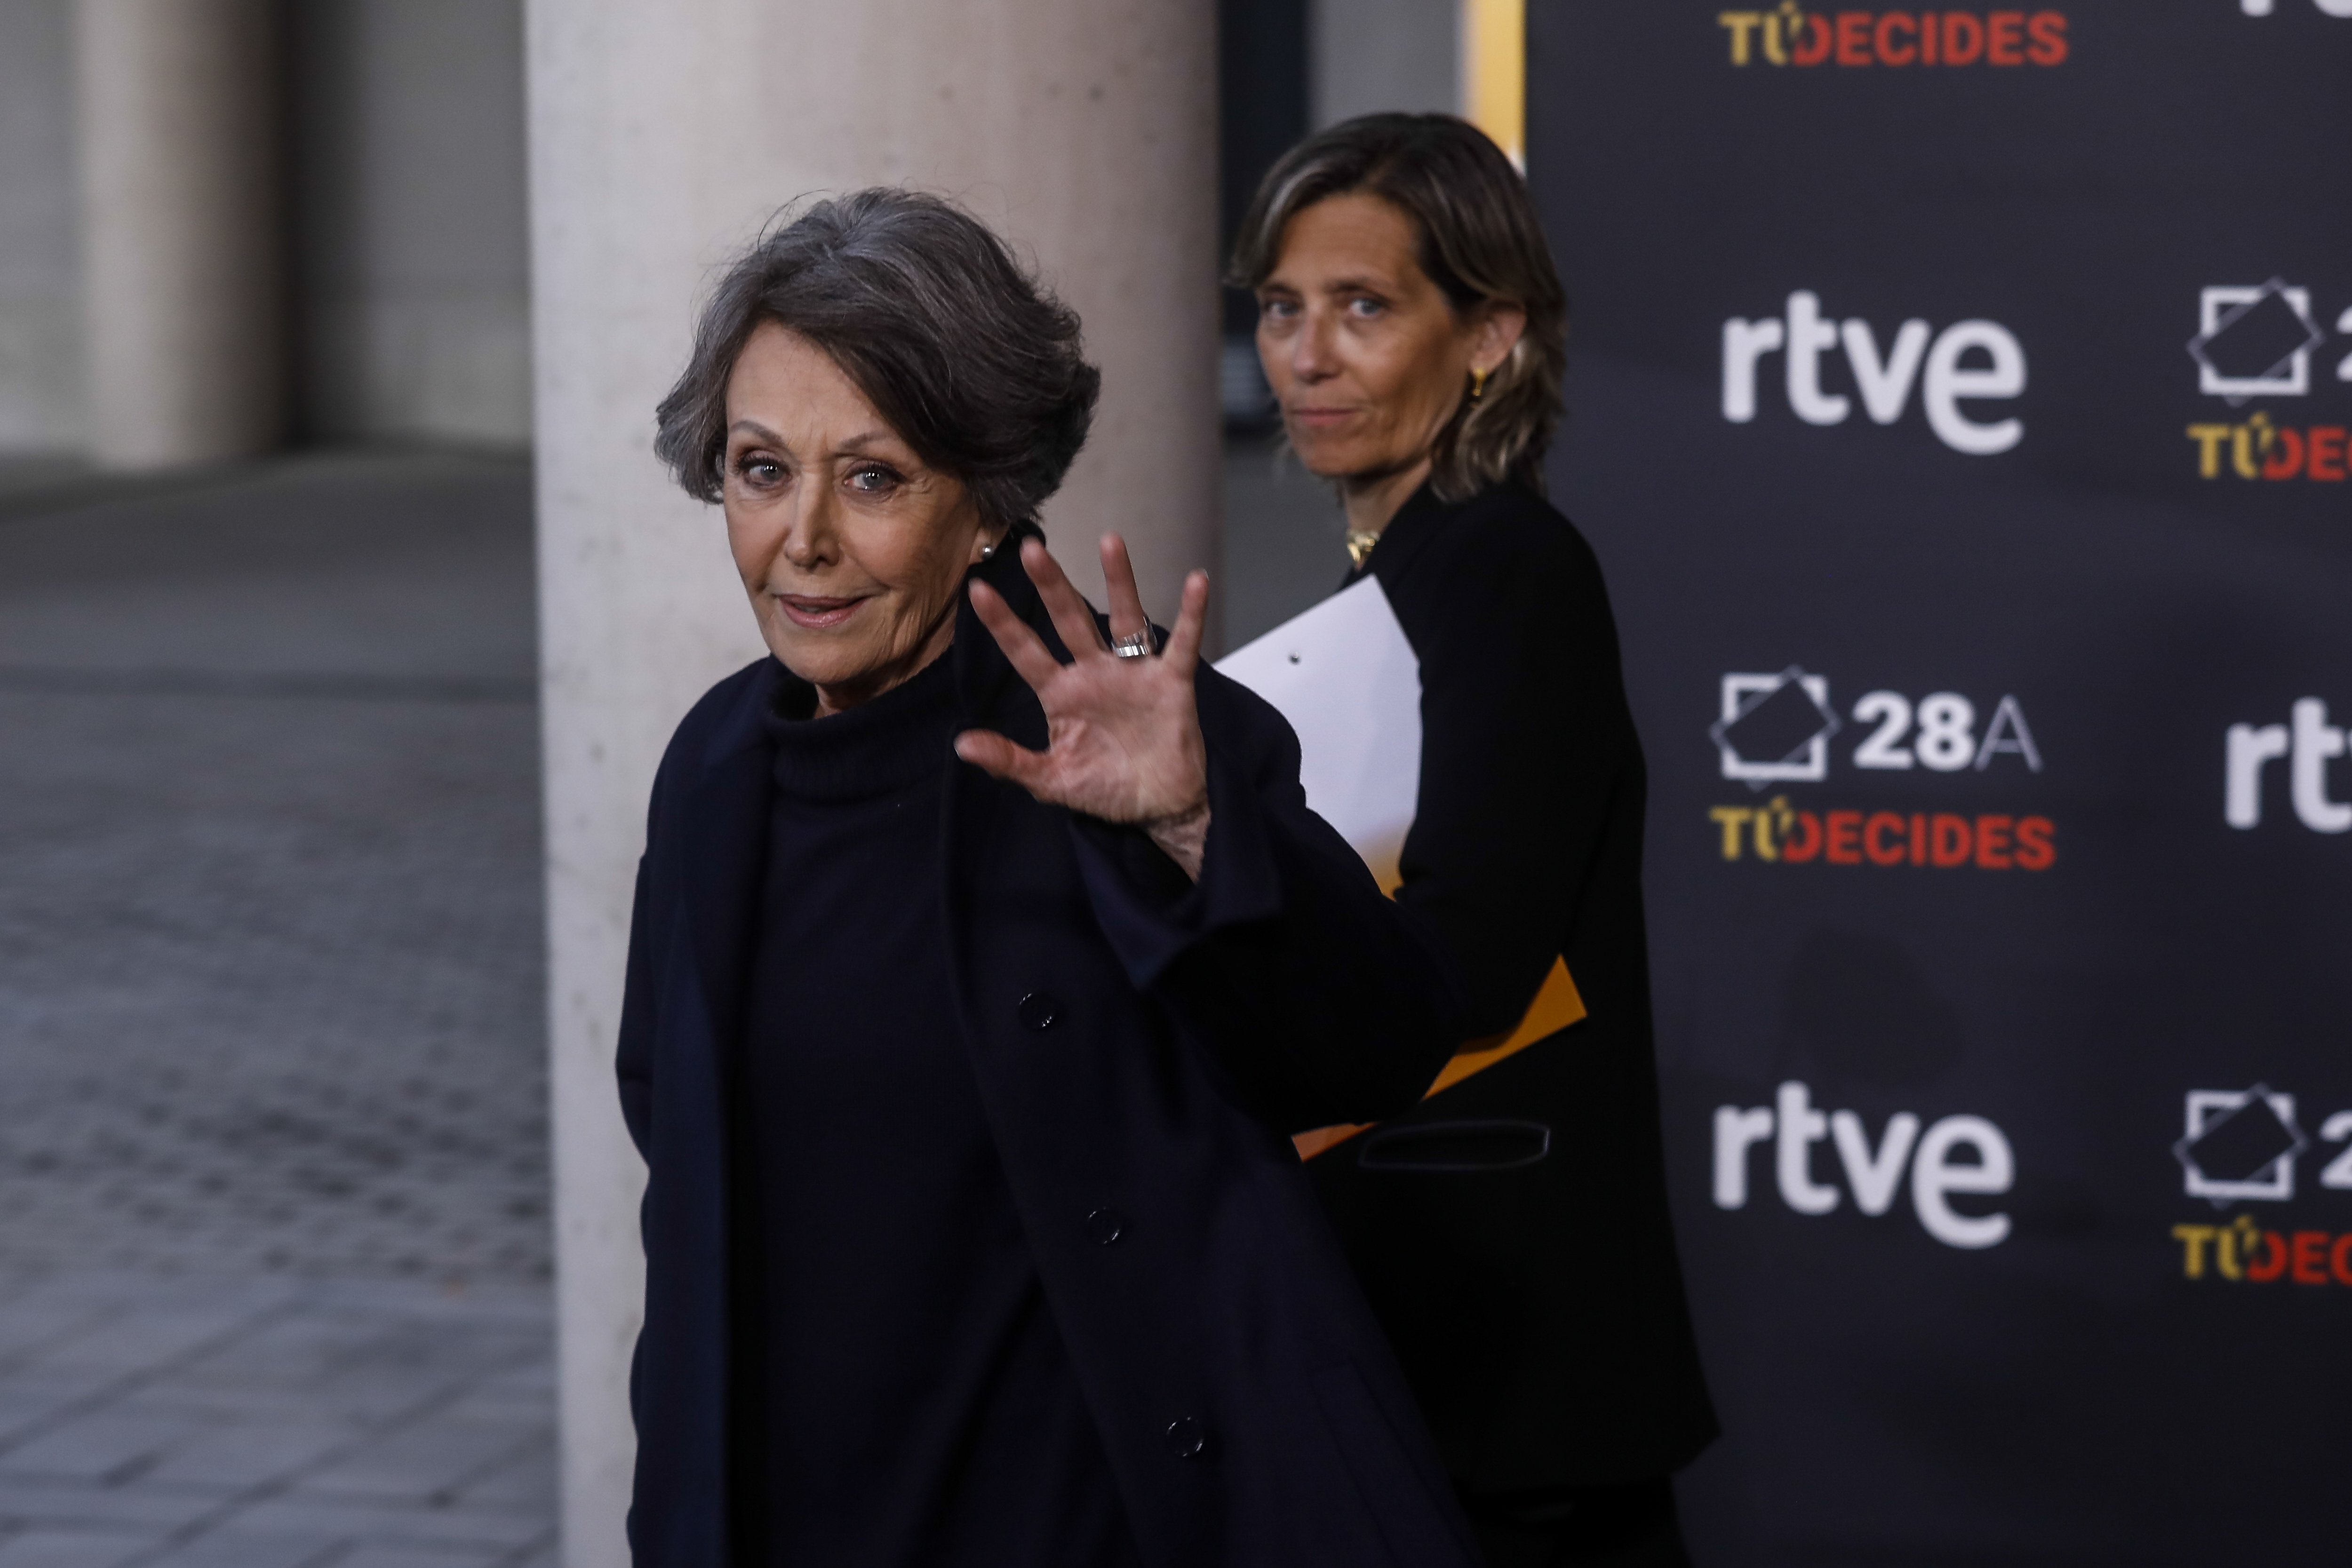 SORPRENENT FITXATGE Famosíssim presentador català, ex de TV3, signa per TVE